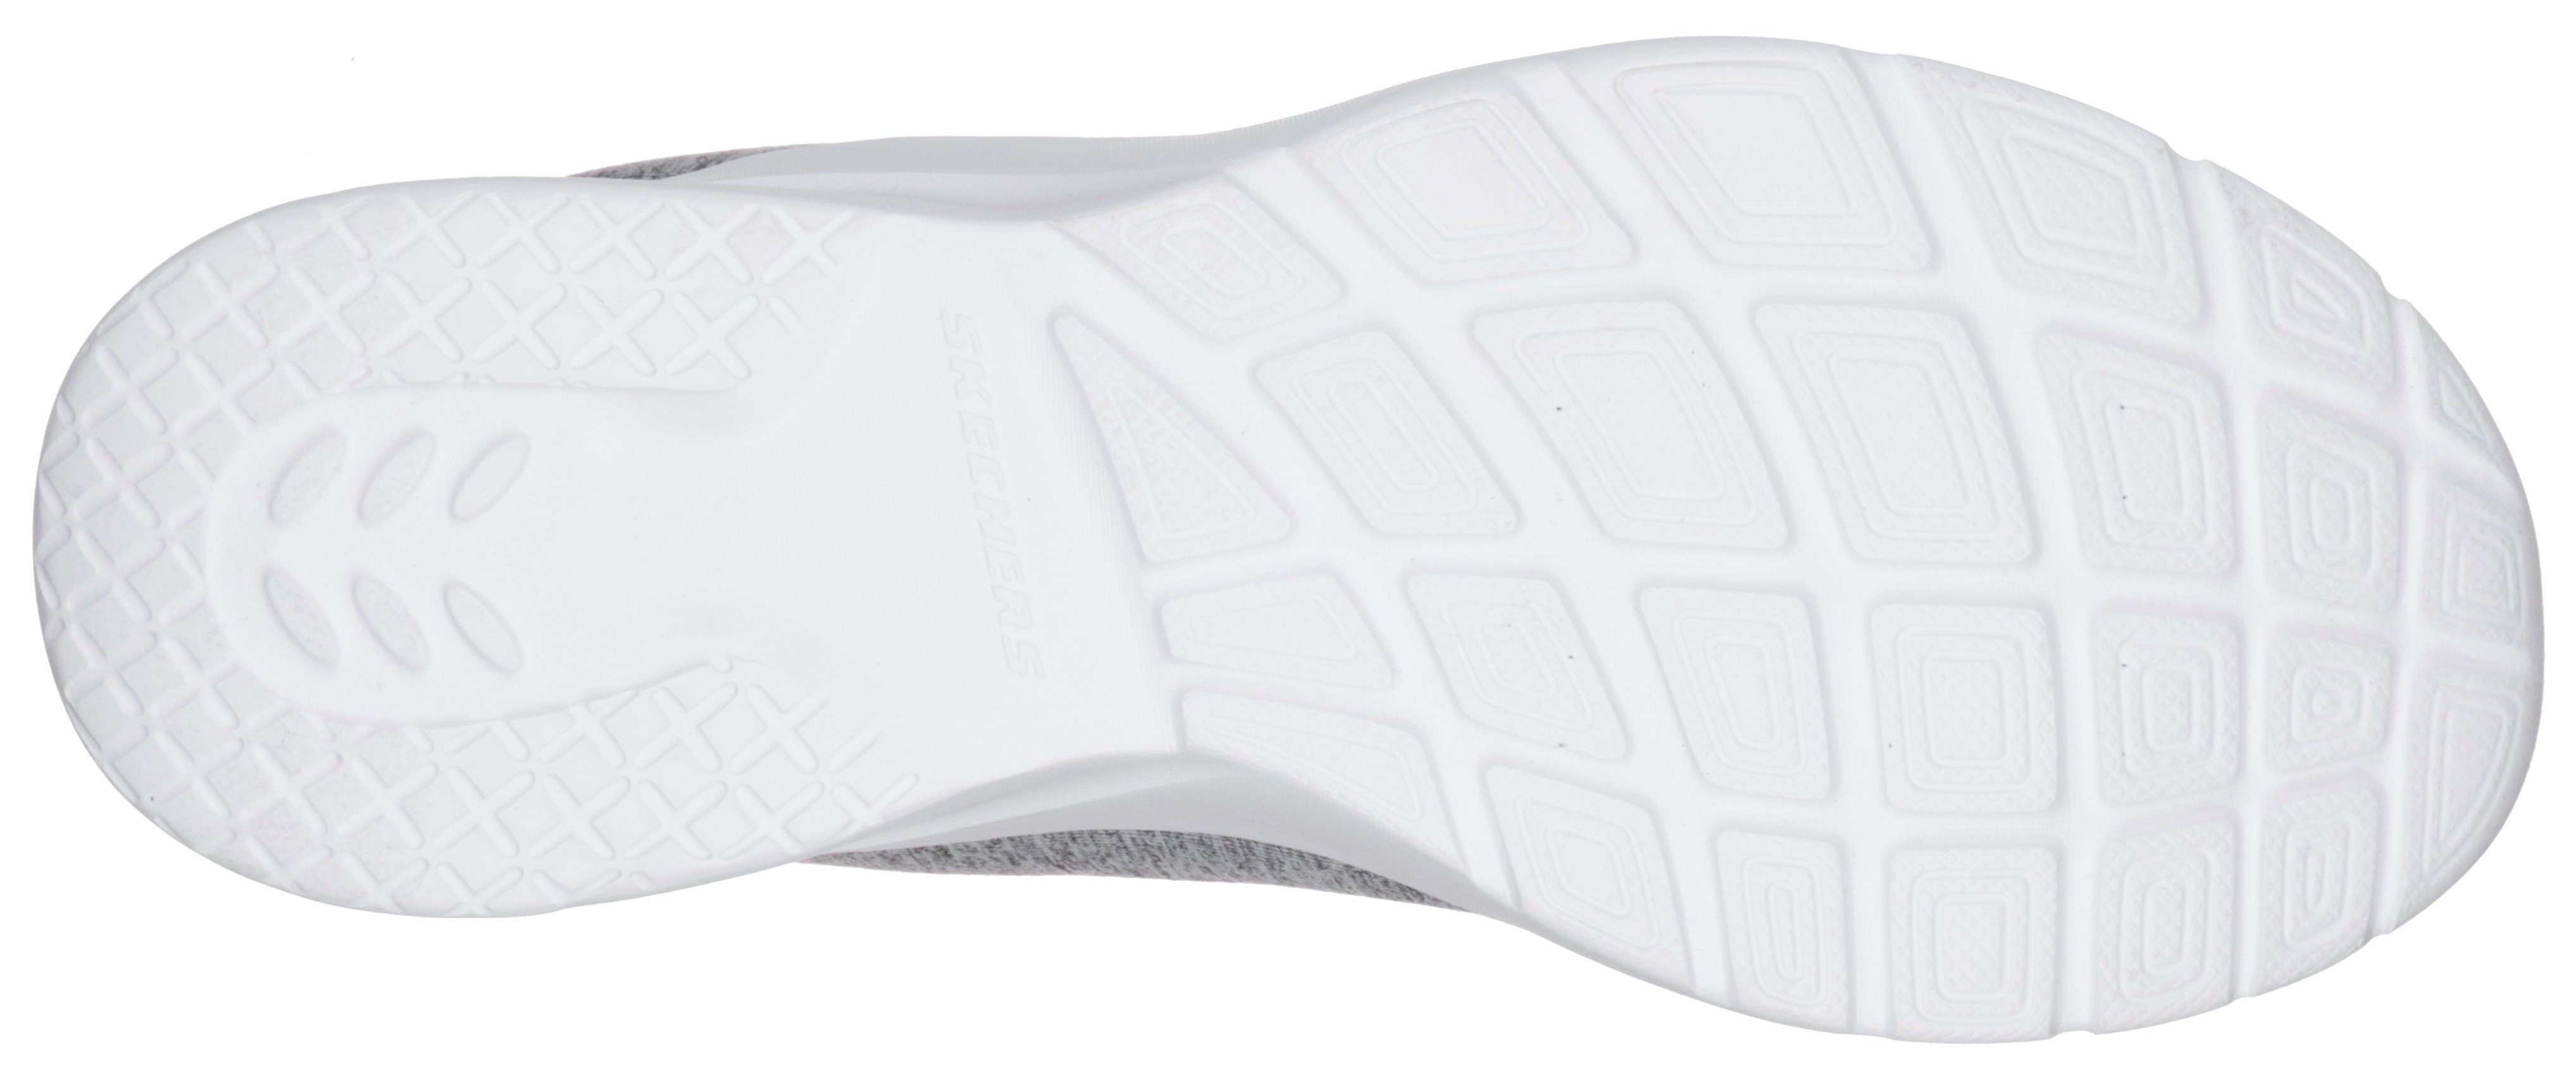 Skechers FLASH grau-mint für Sneaker geeignet A 2.0-IN Maschinenwäsche DYNAMIGHT Slip-On